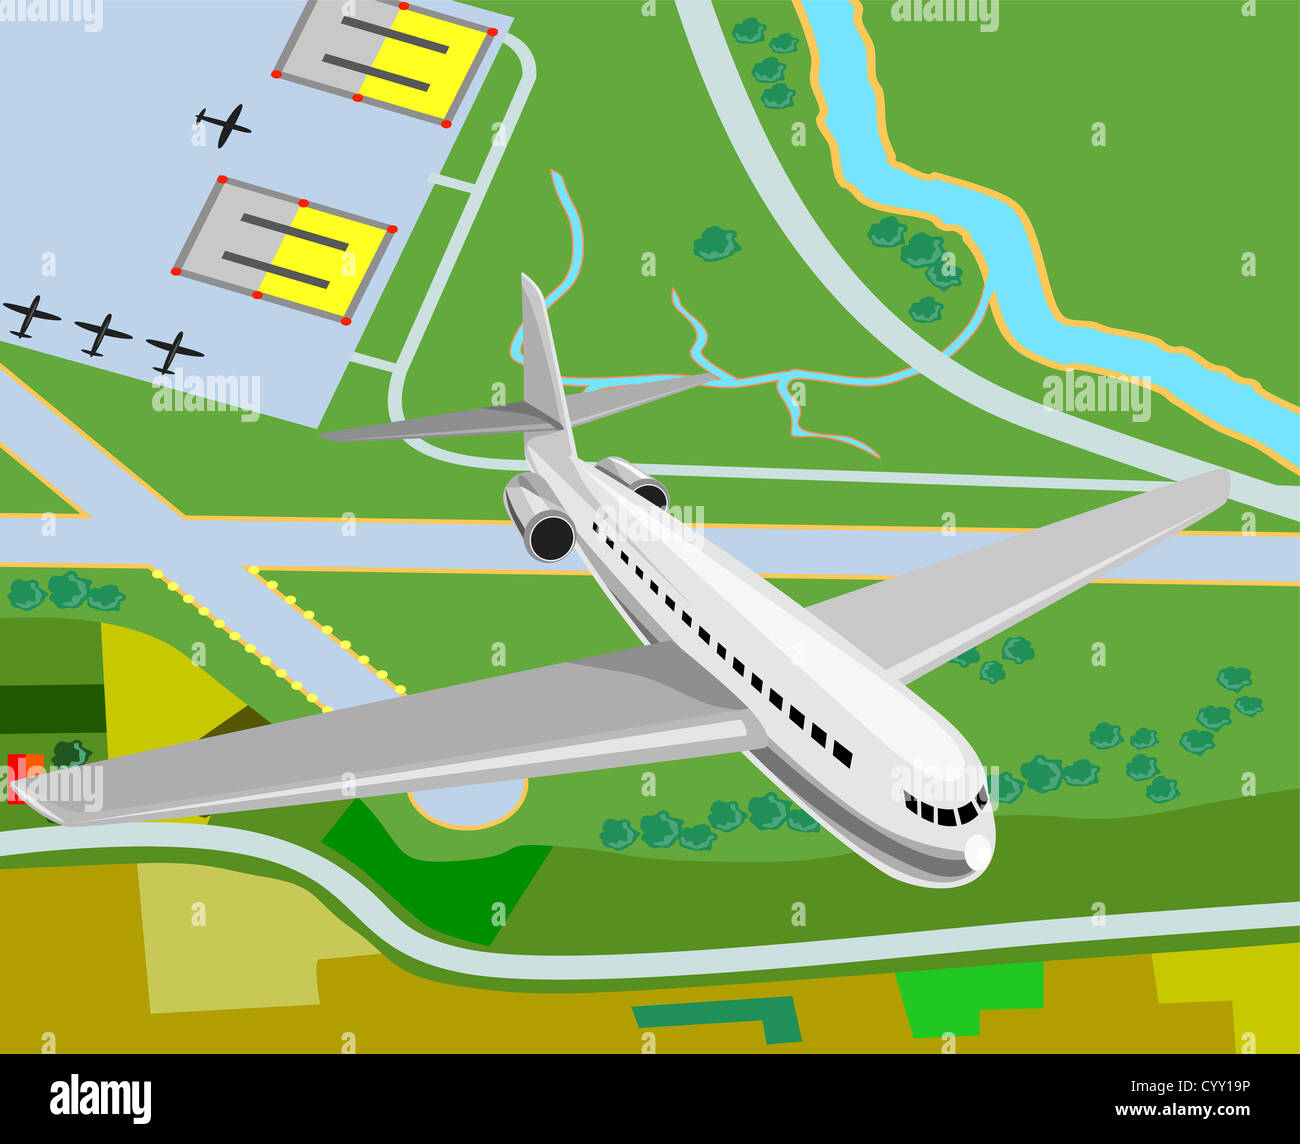 Ilustración de un avión comercial del jet airliner vista aérea. Foto de stock